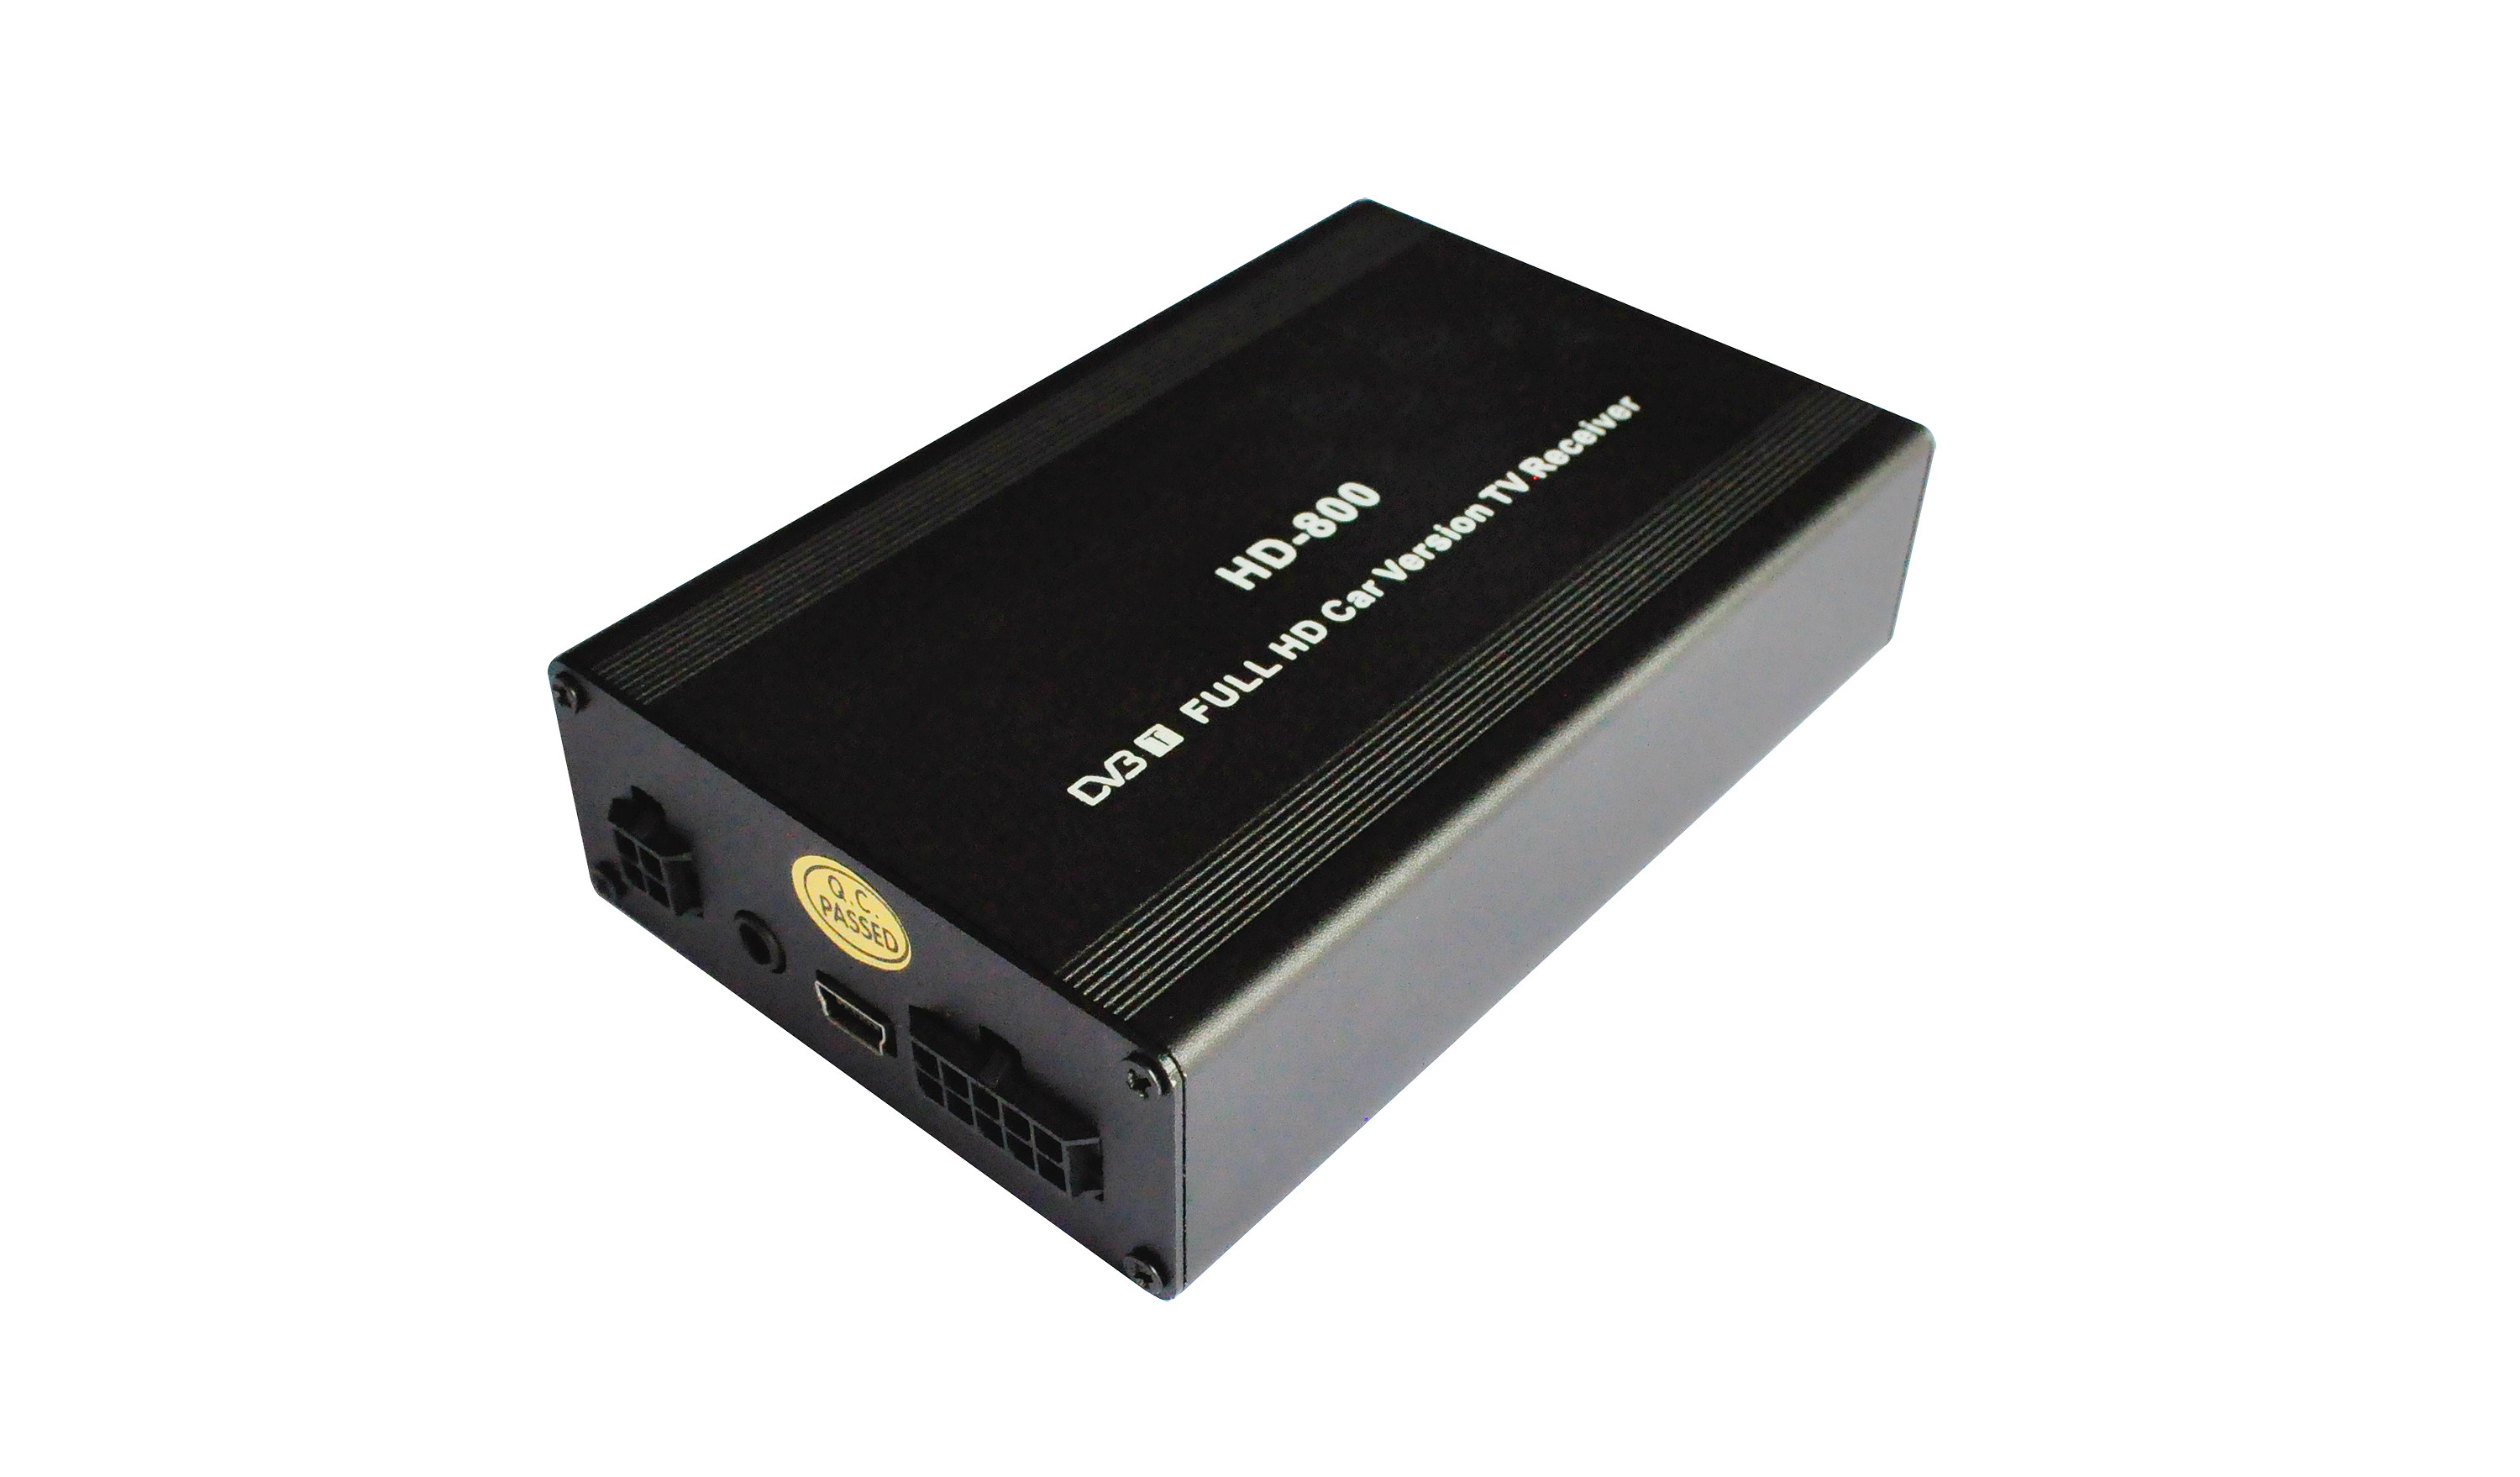 Double Tuner TNT AGW92 DVB-T 160km/h fonction PVR USB LED dporte avec 2 antennes et dcodeur DIVX MKV MPEG4